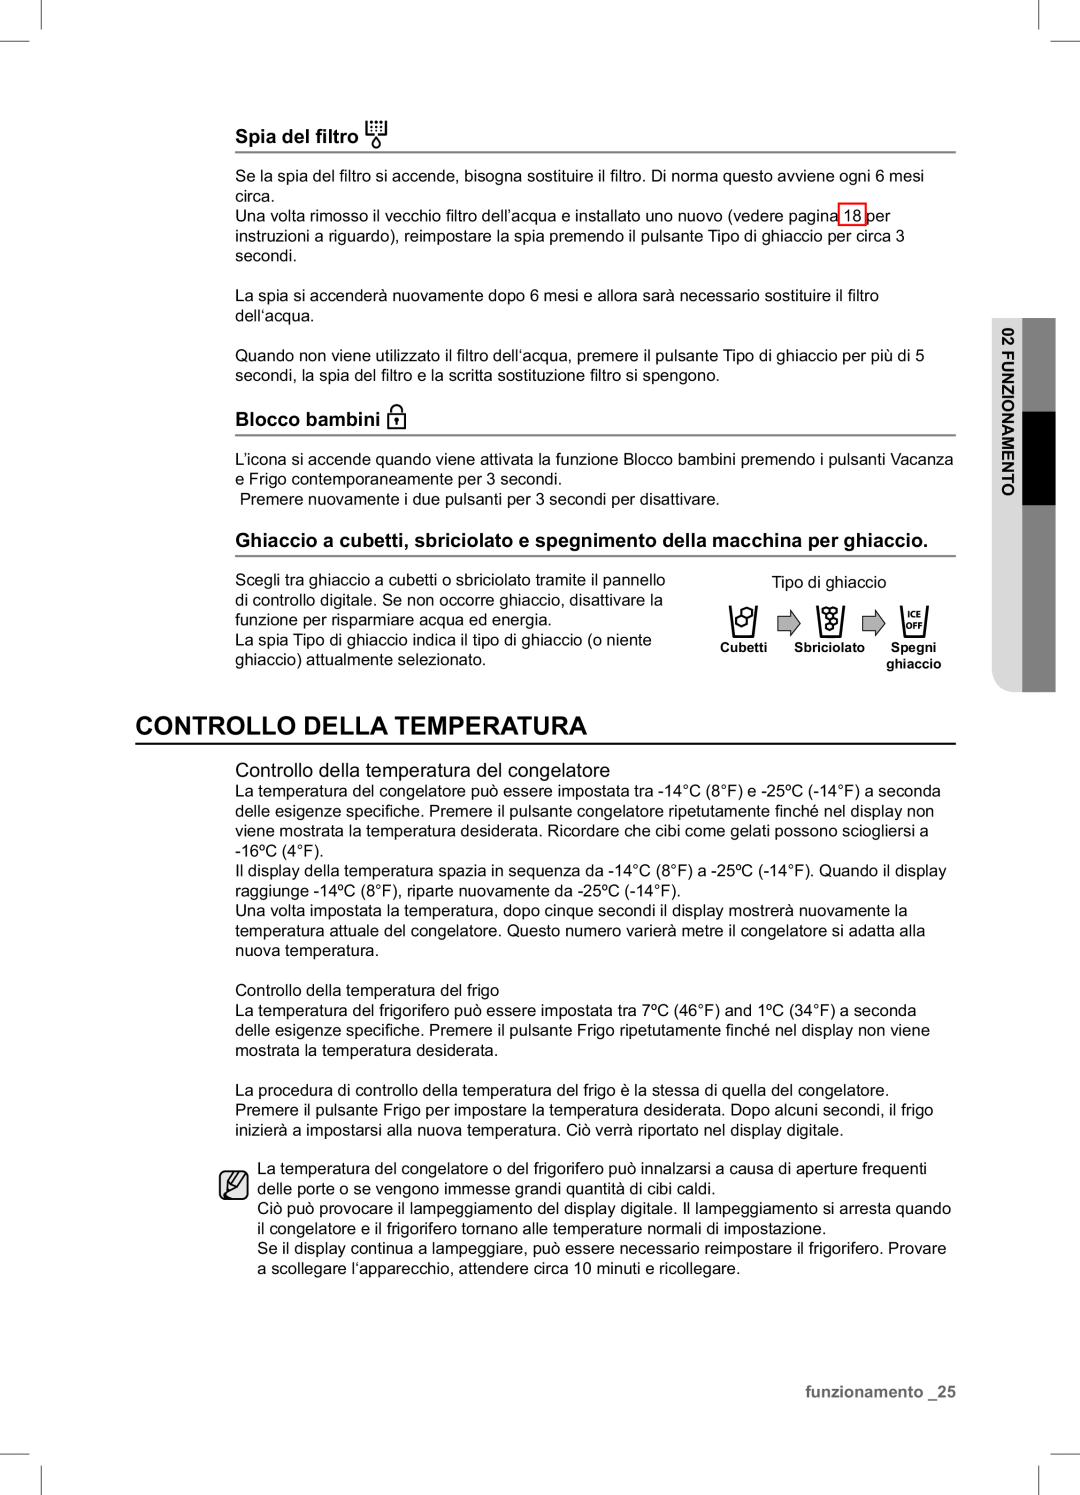 Samsung RSA1NTPE1/XES manual Controllo Della Temperatura, Spia del ﬁltro, Blocco bambini, funzionamento 